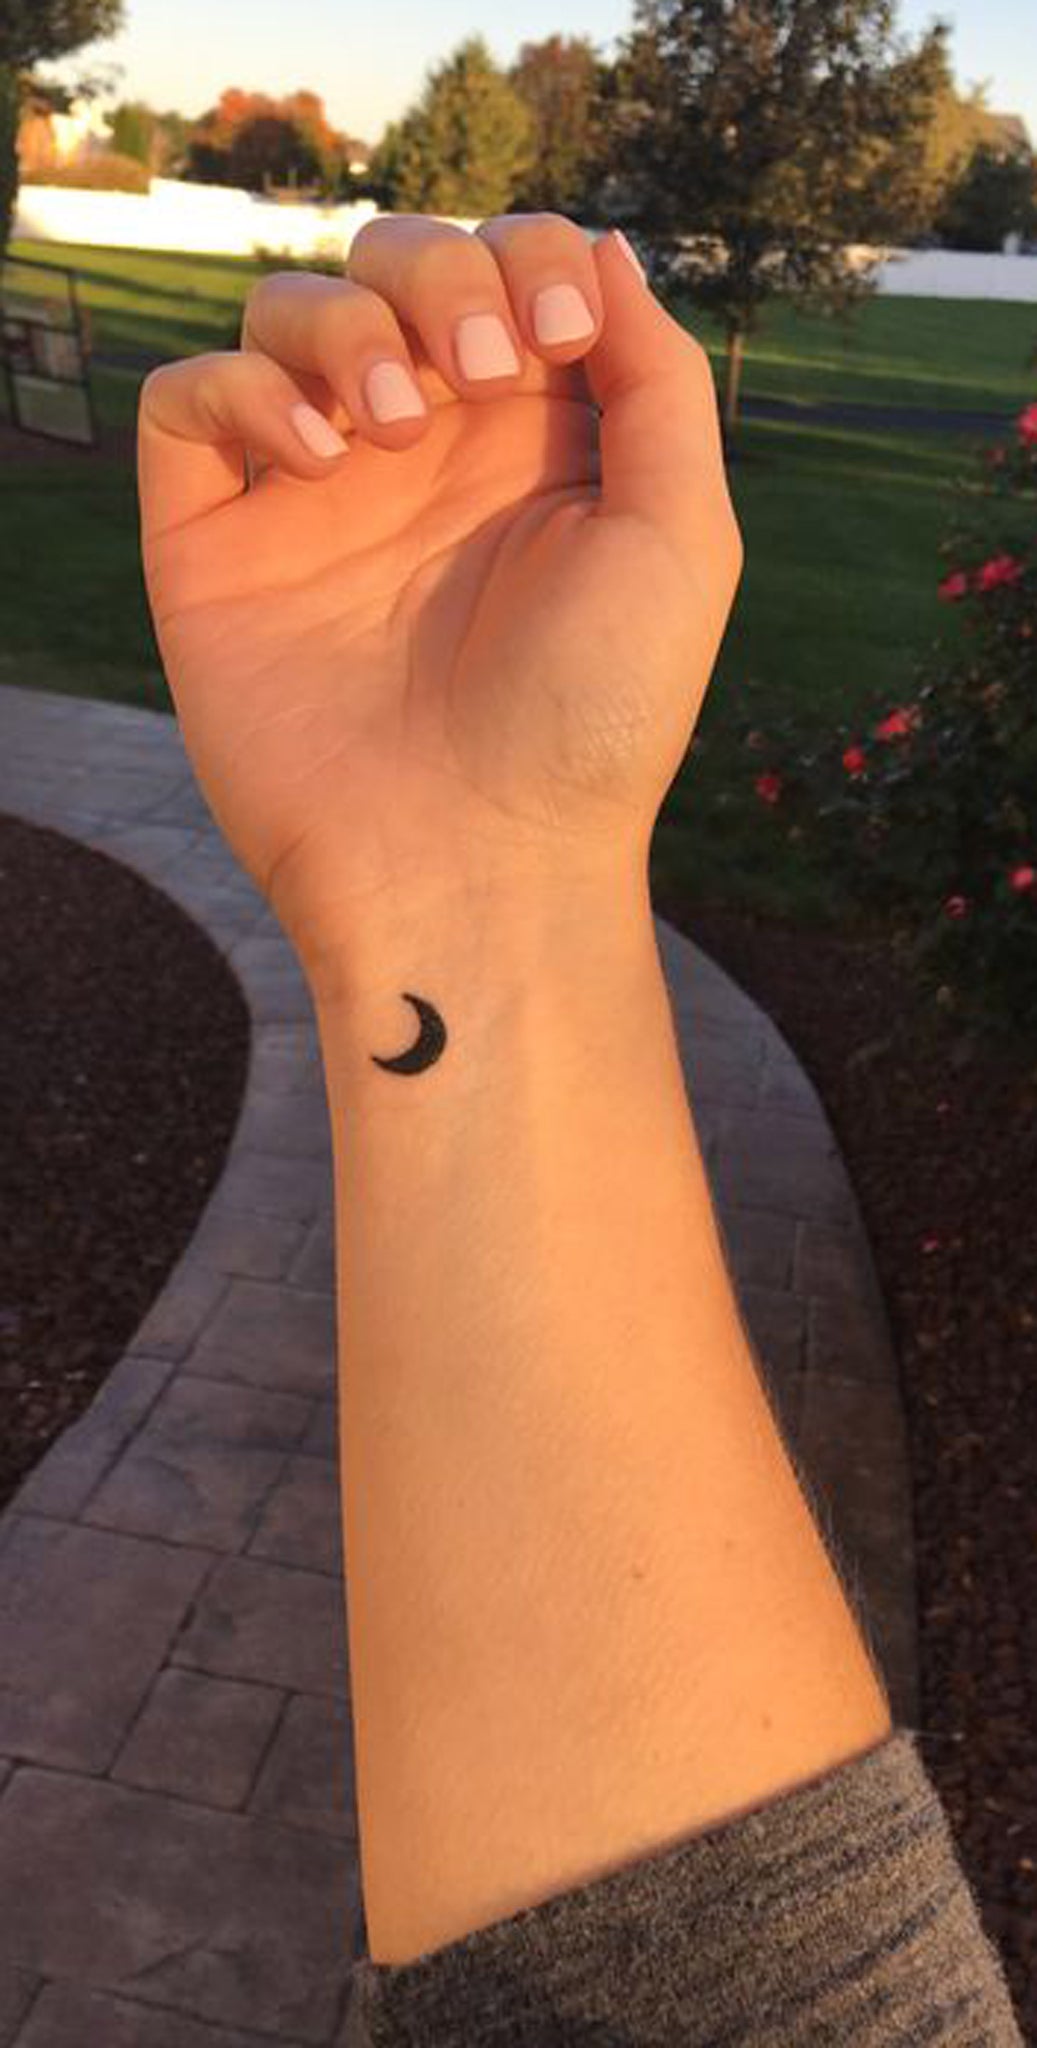 Crescent Moon Tattoo Designs  TattoosWin  Moon tattoo designs Crescent  moon tattoo Cresent moon tattoo